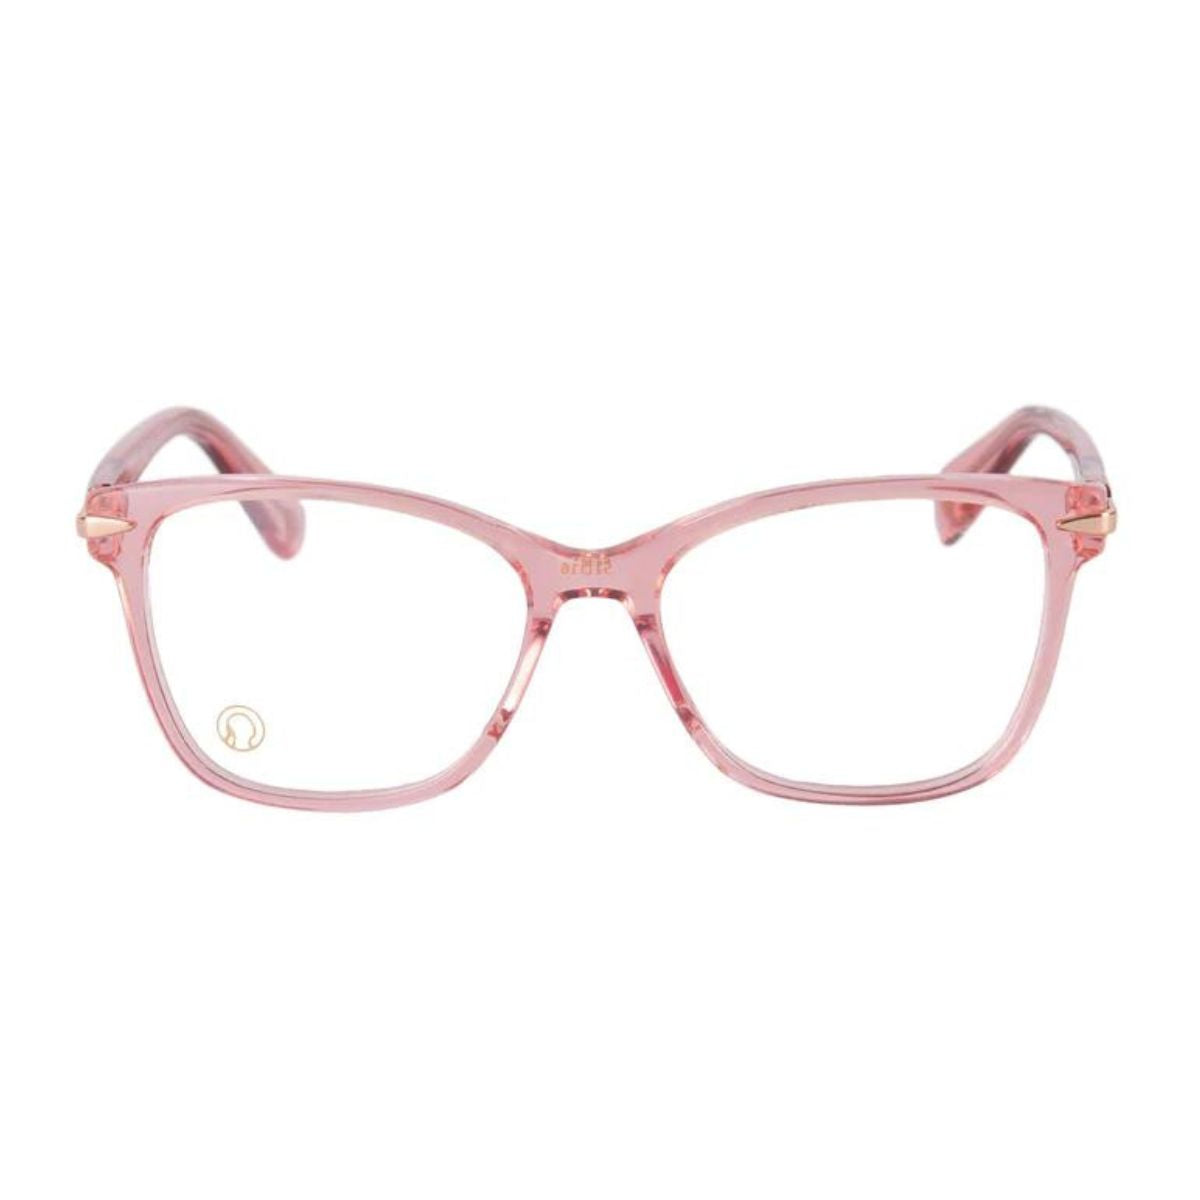 "best The Monk Florence C4 cat eye eyewear frame for women's at optorium"